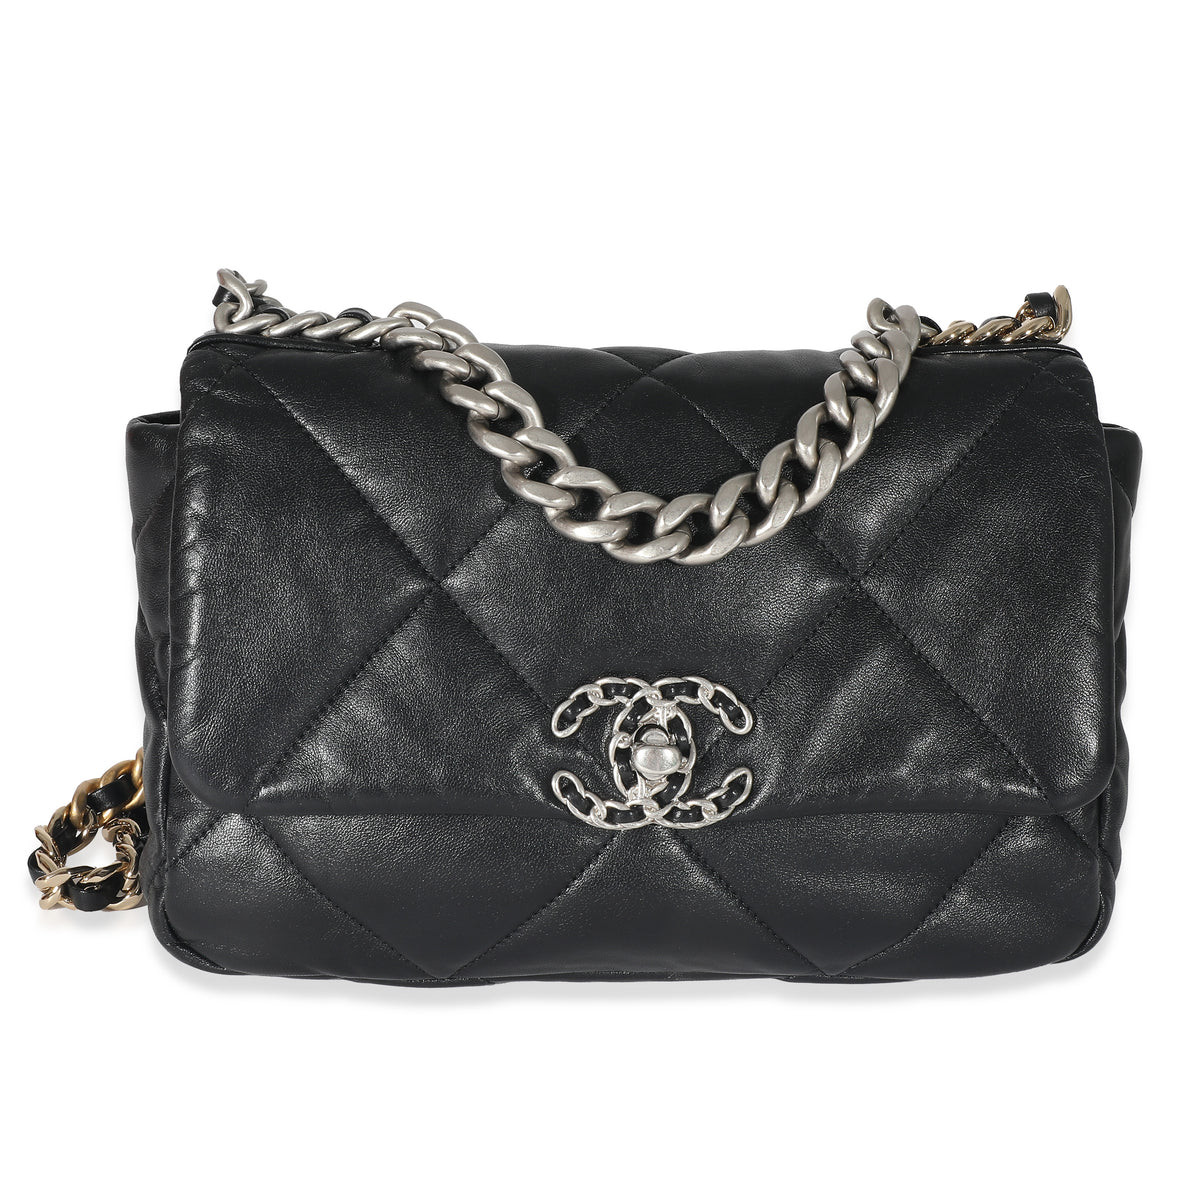 Chanel Medium 19 Flap Handbag